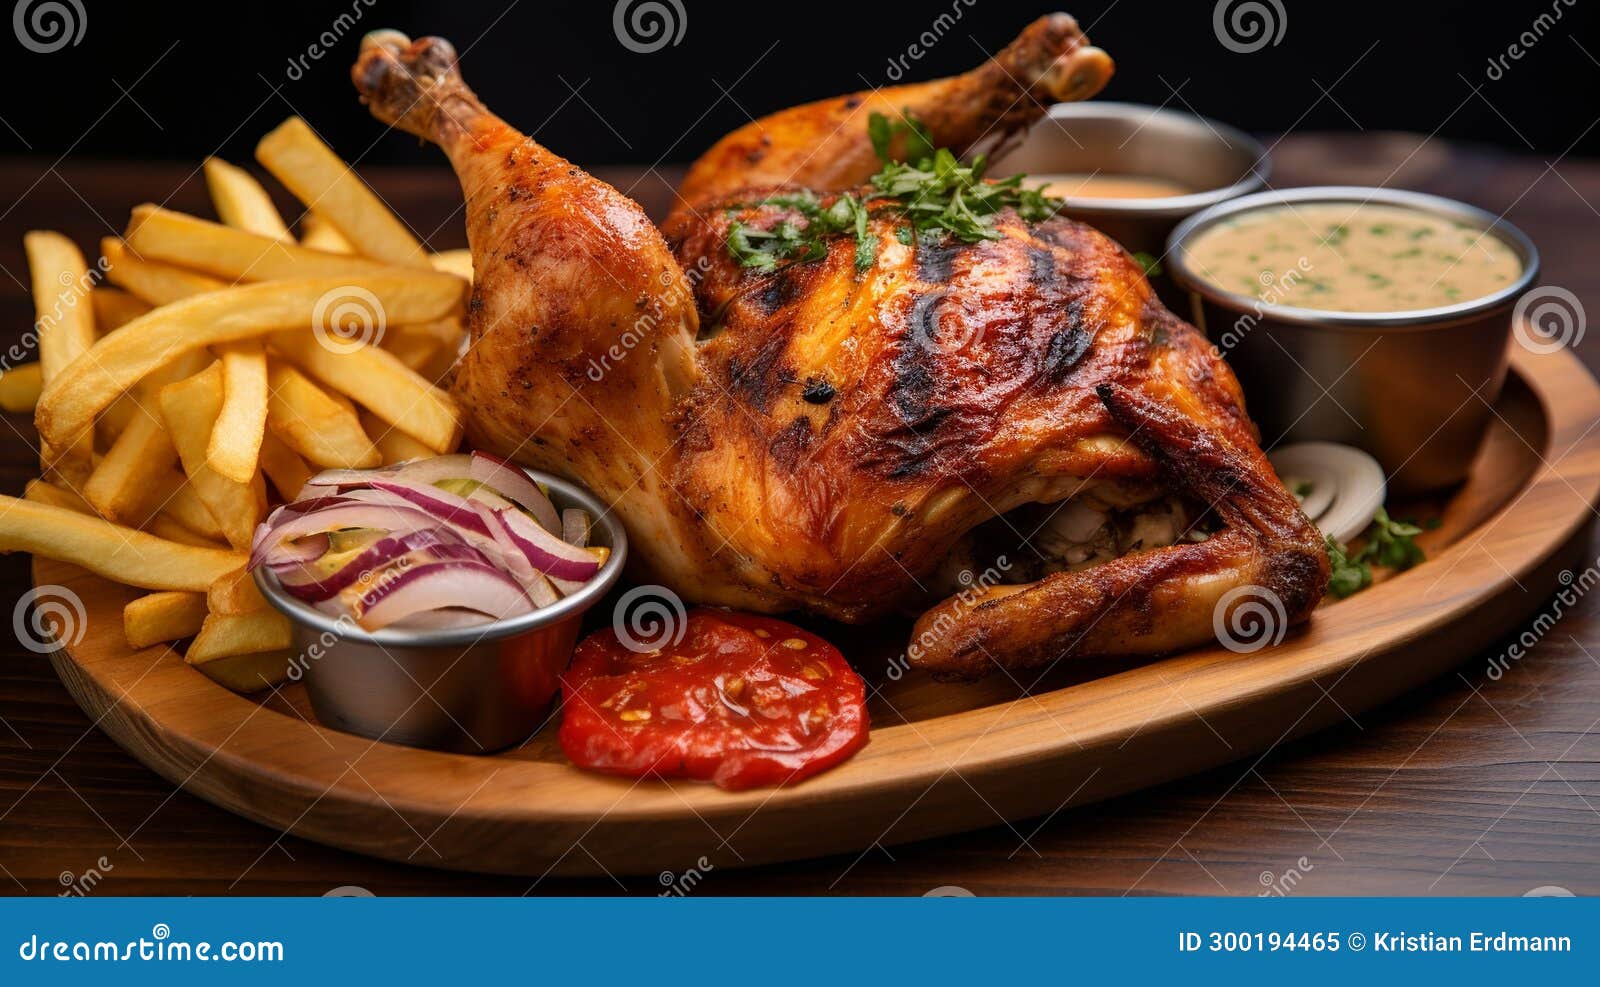 pollo a la brasa: peruvian rotisserie chicken with sides